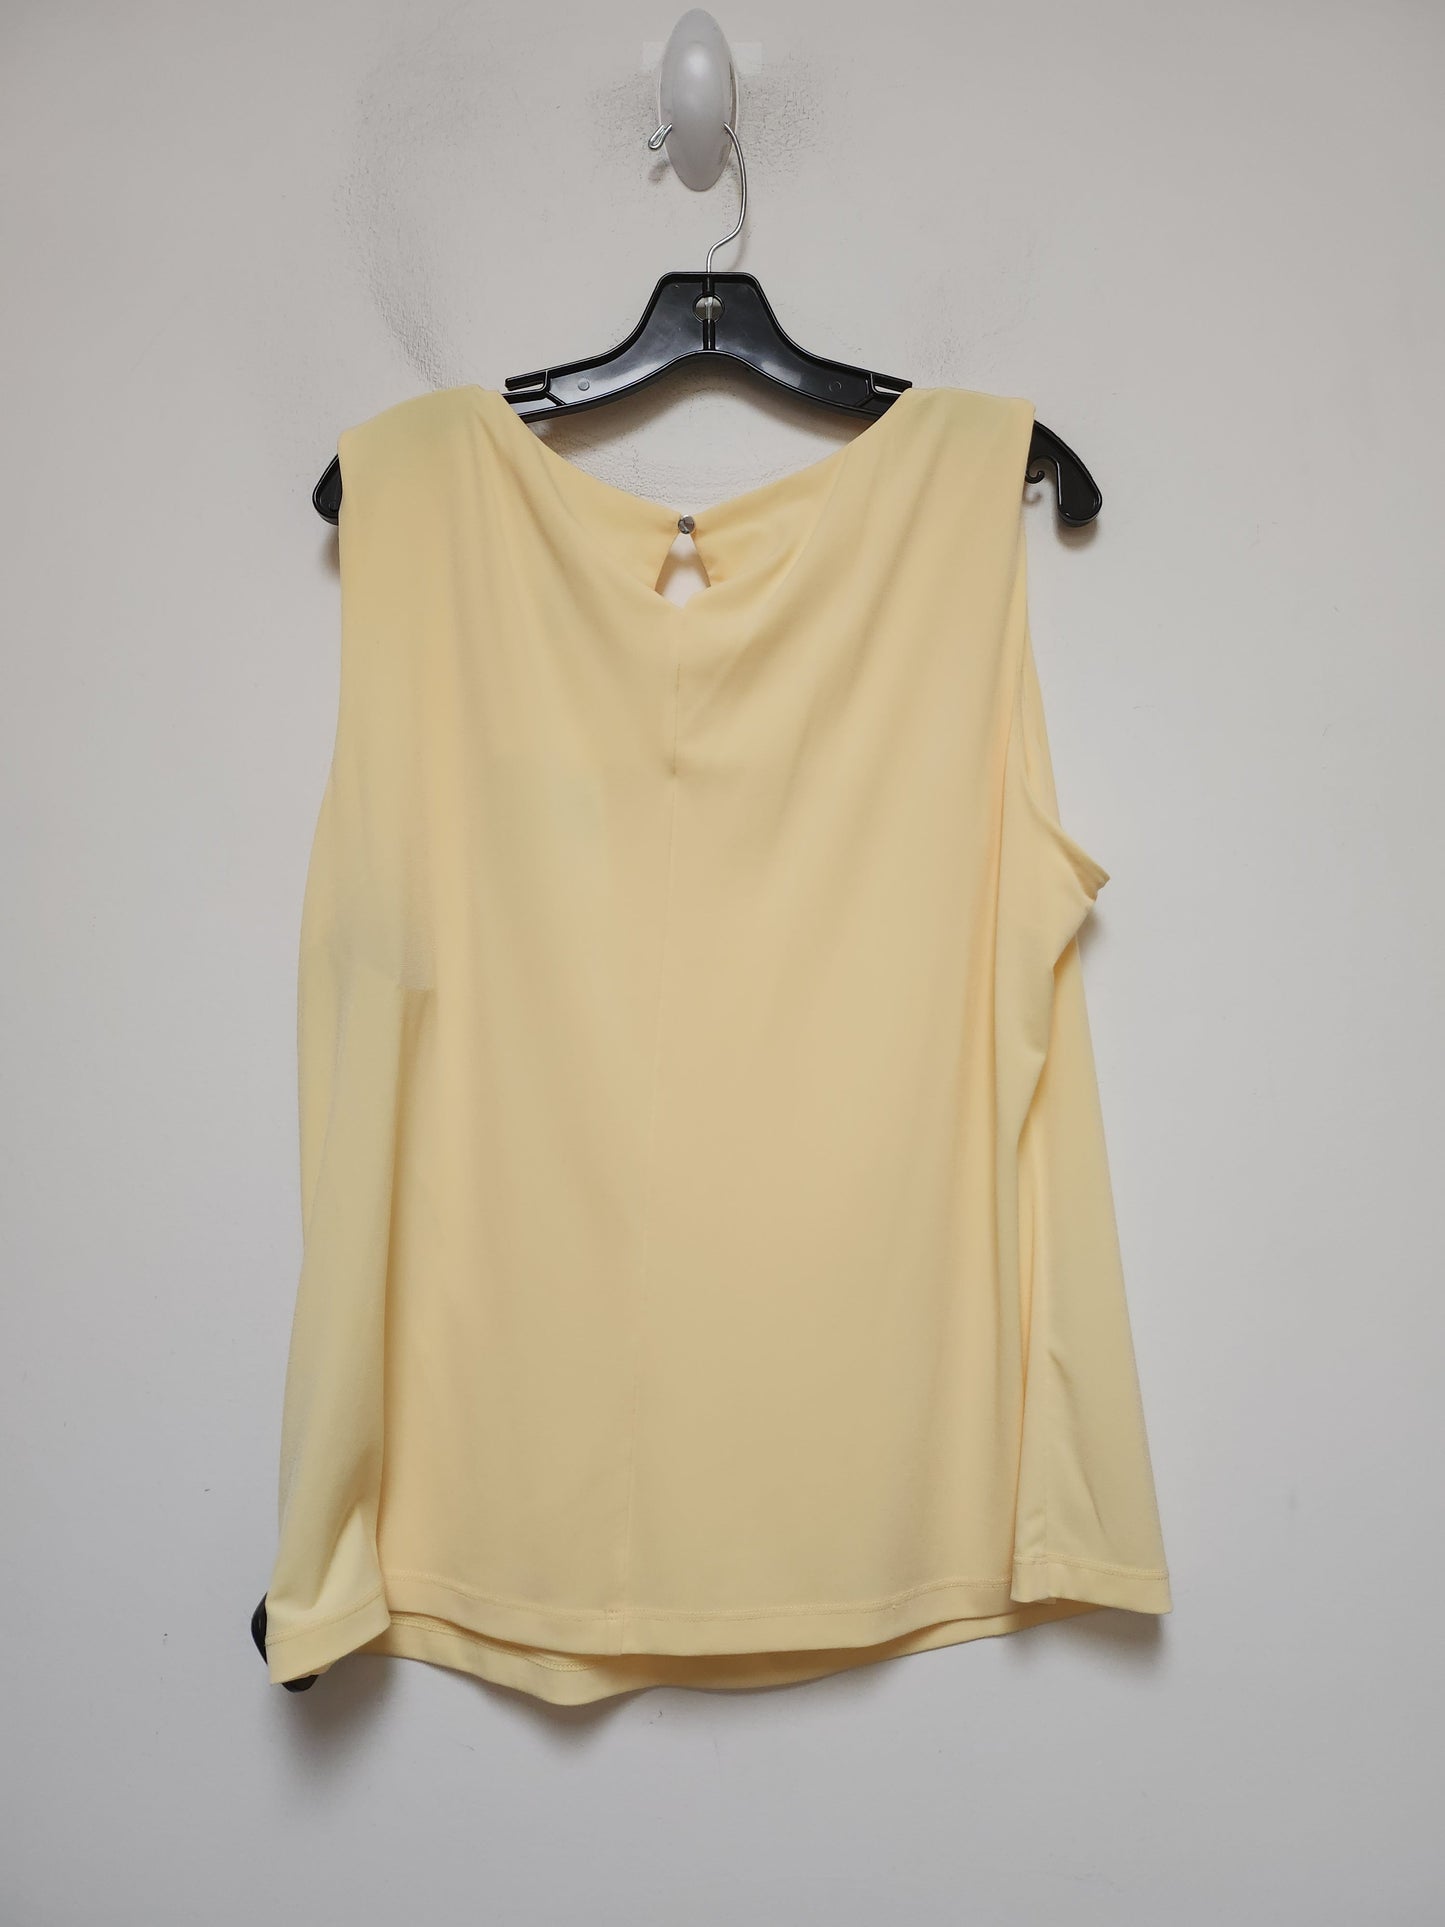 Yellow Top Sleeveless Calvin Klein, Size 1x